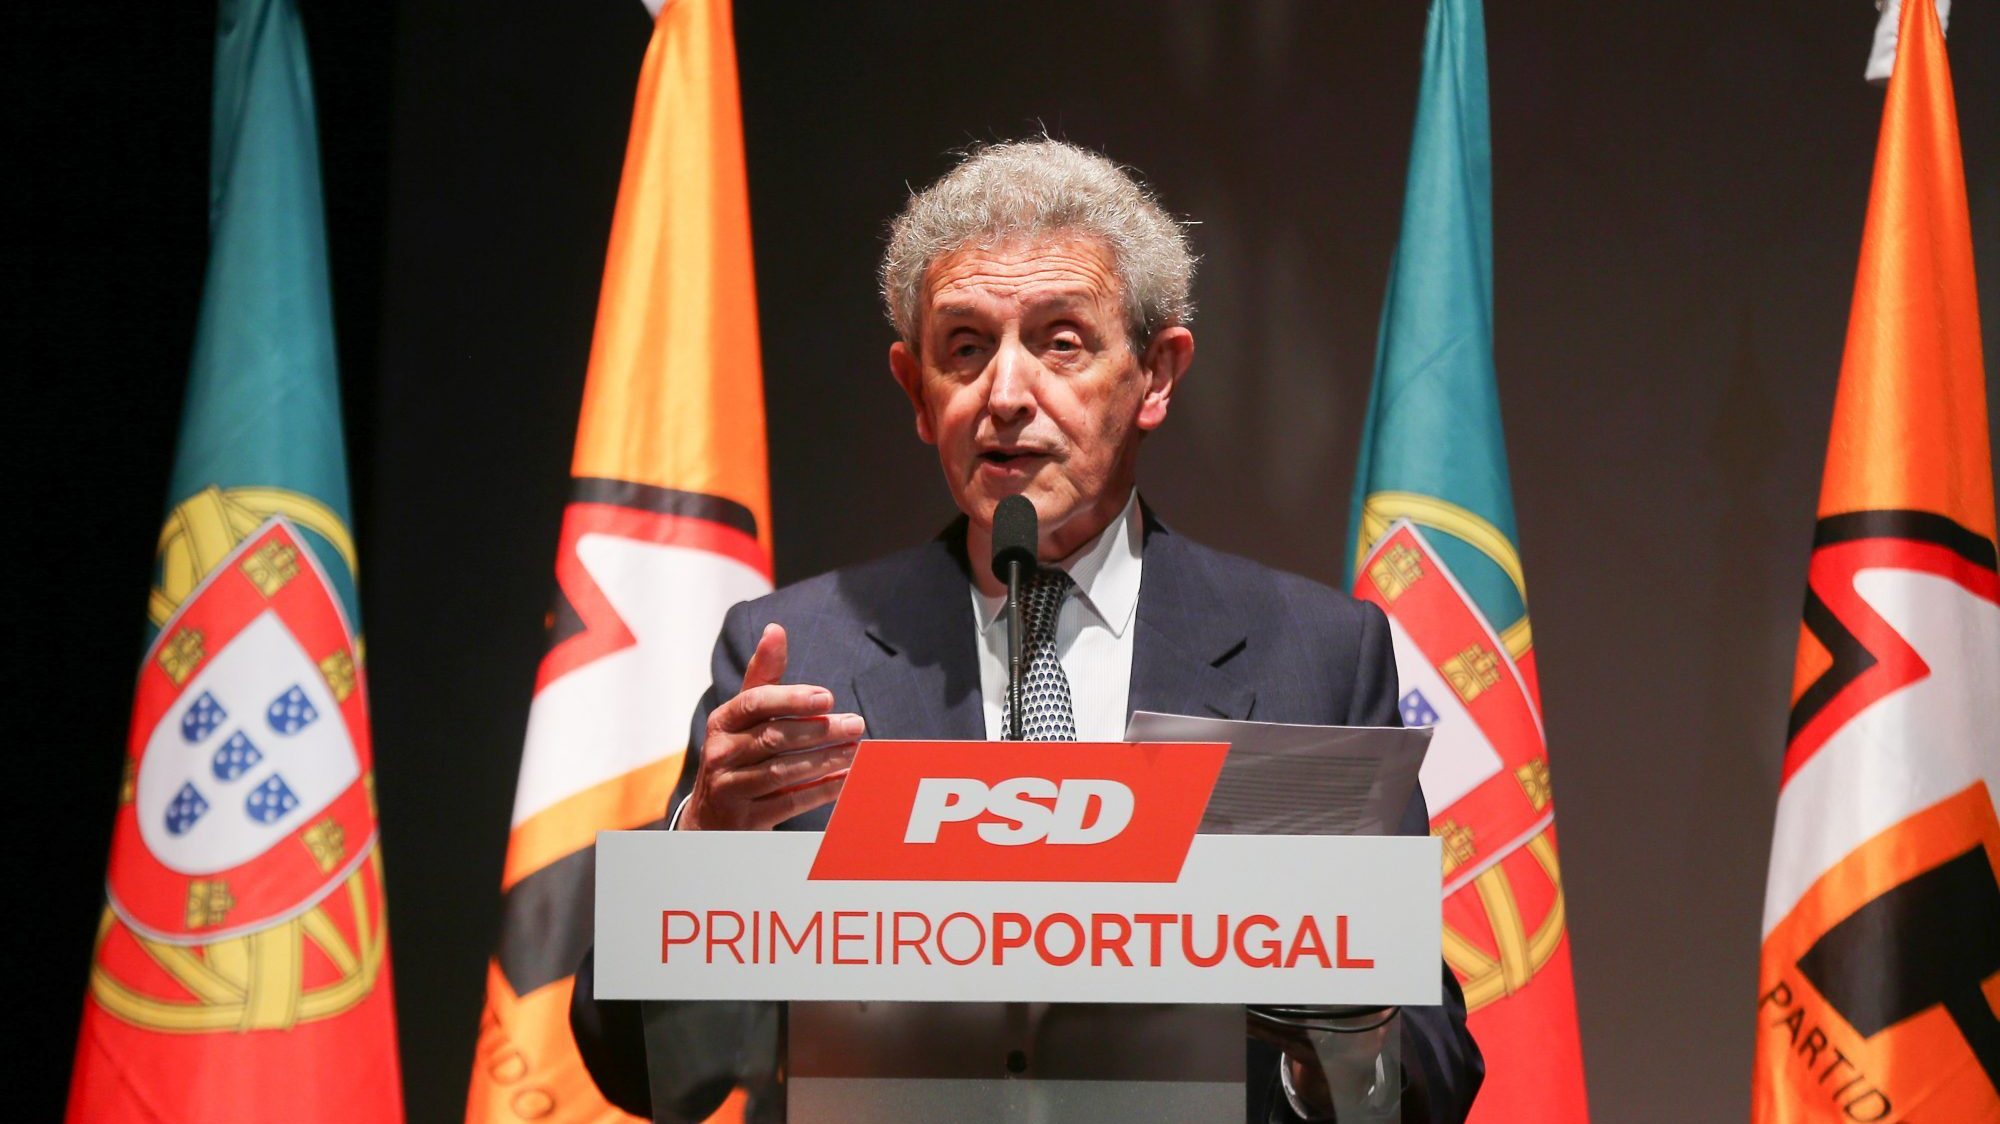 Na realização desta homenagem, estavam presentes o primeiro-ministro, António Costa, o presidente do PSD, Rui Rio, o líder parlamentar social-democrata, Paulo Mota Pinto, entre outros